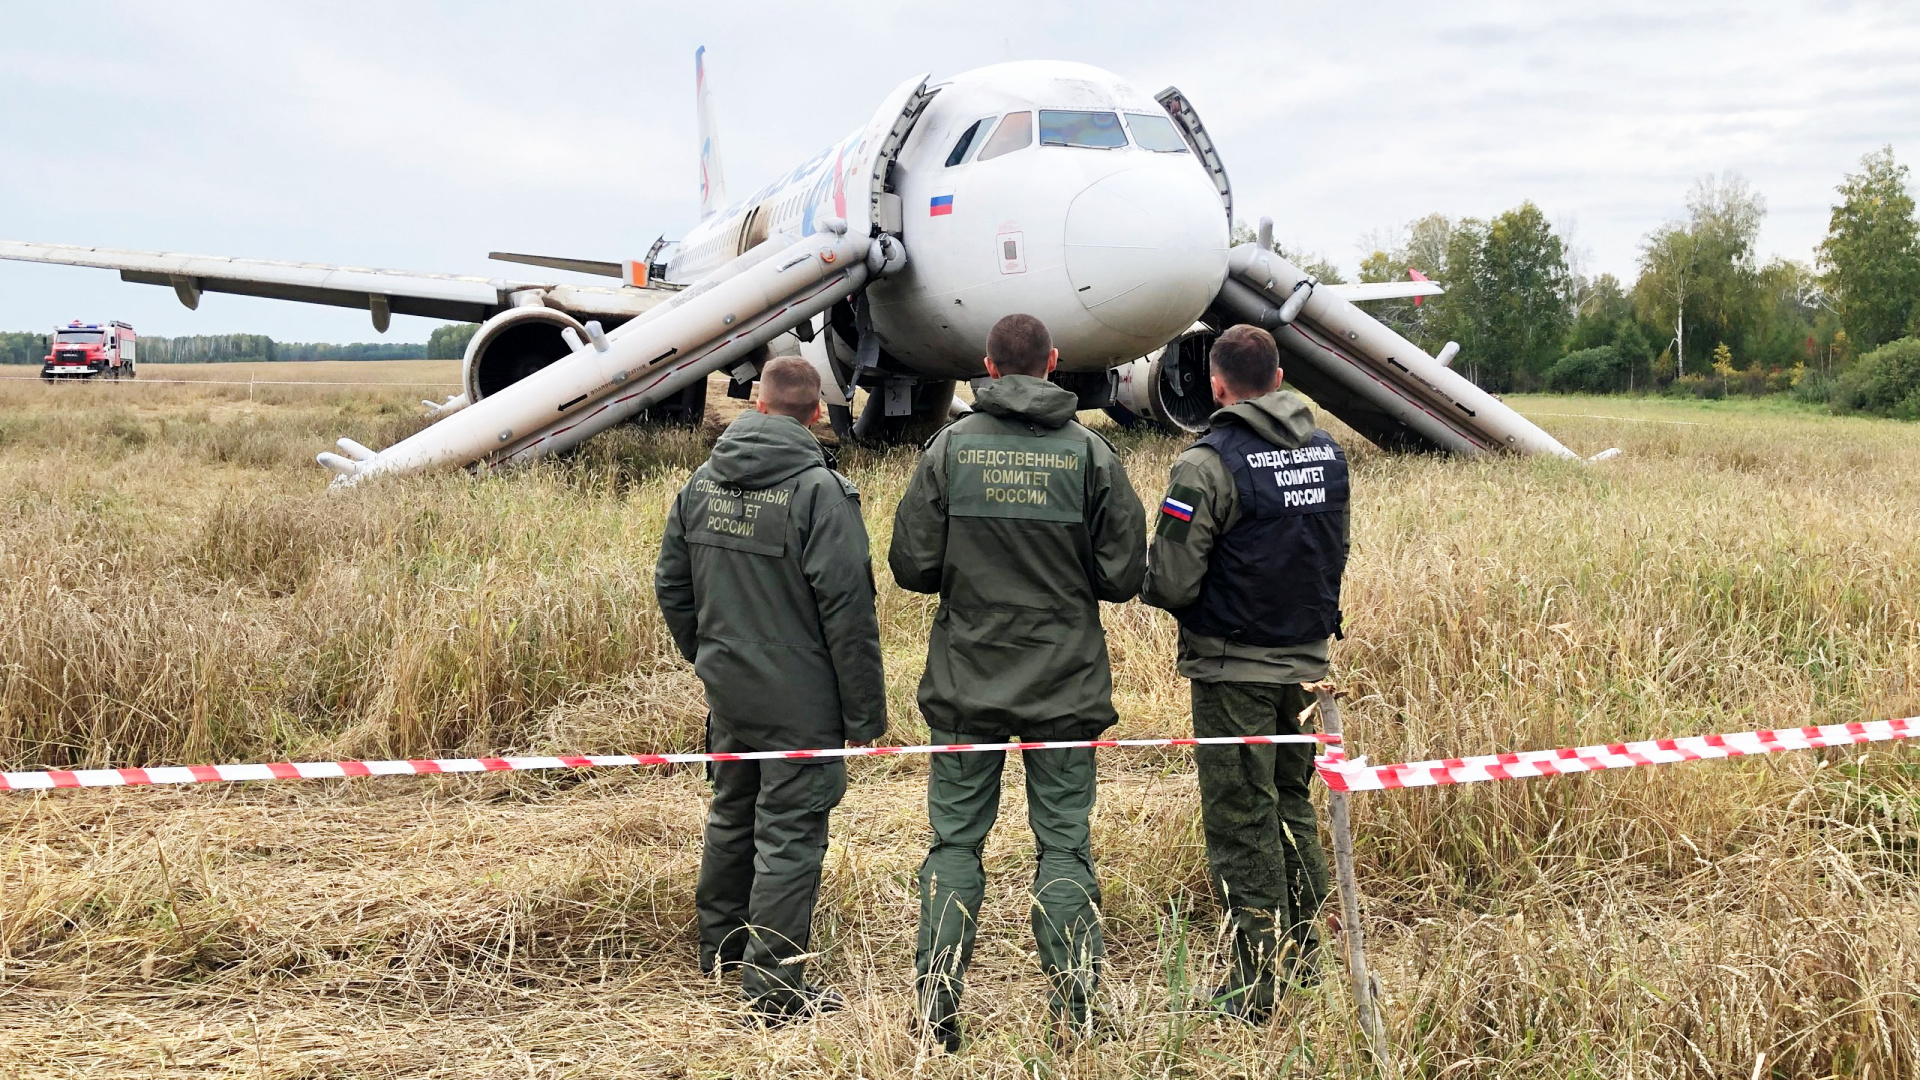 Se filtra una información que revela un posible colapso de las aerolíneas rusas